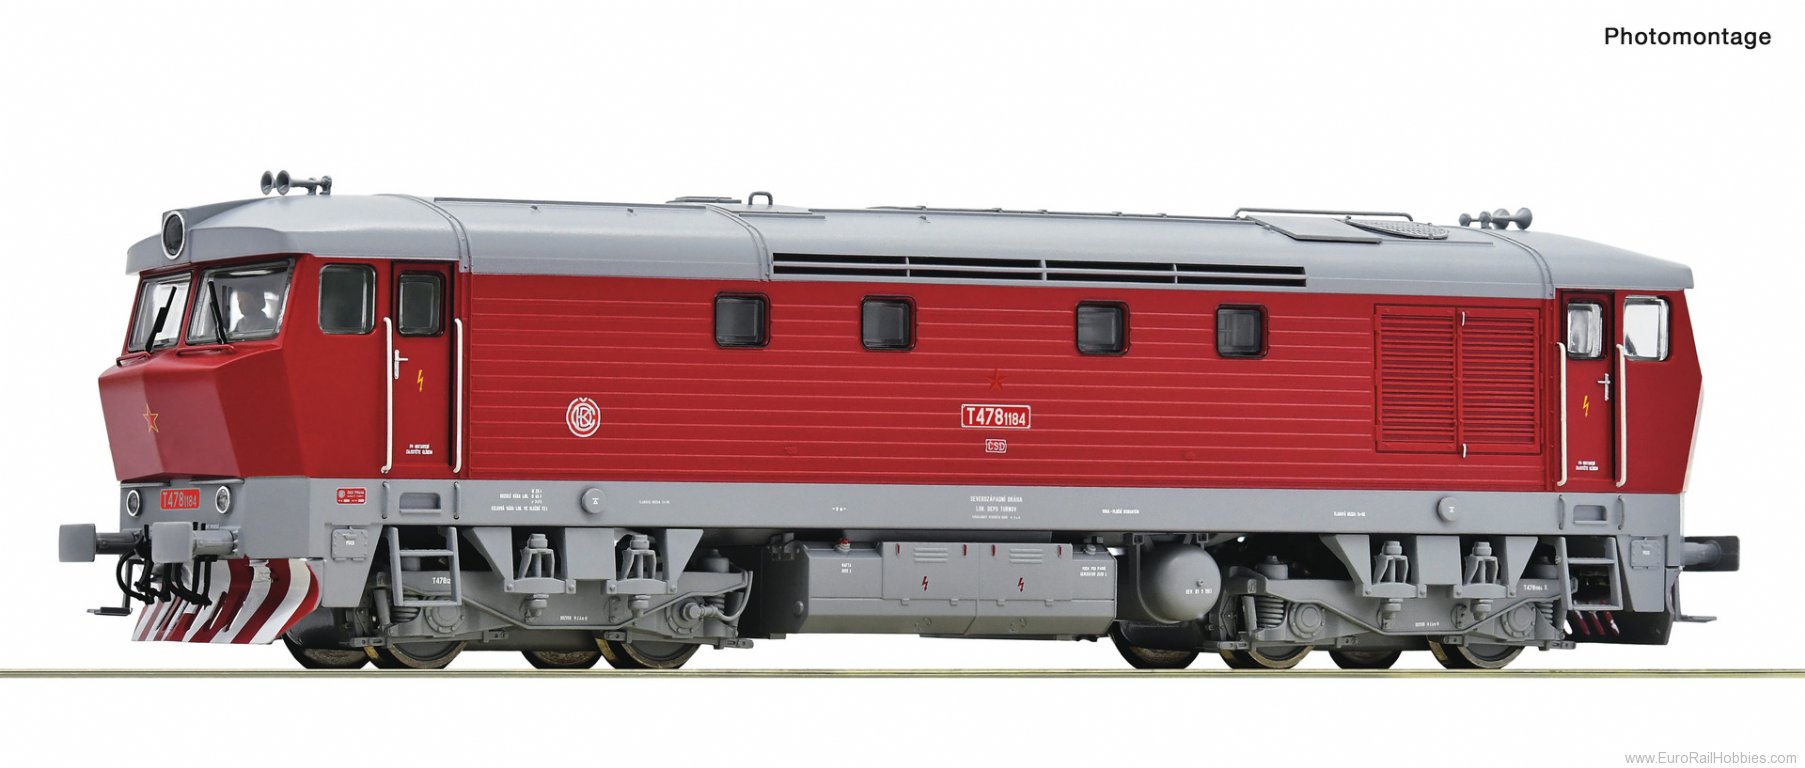 Roco 7310028 Diesel locomotive T 478 1184, CSD (DCC Sound)